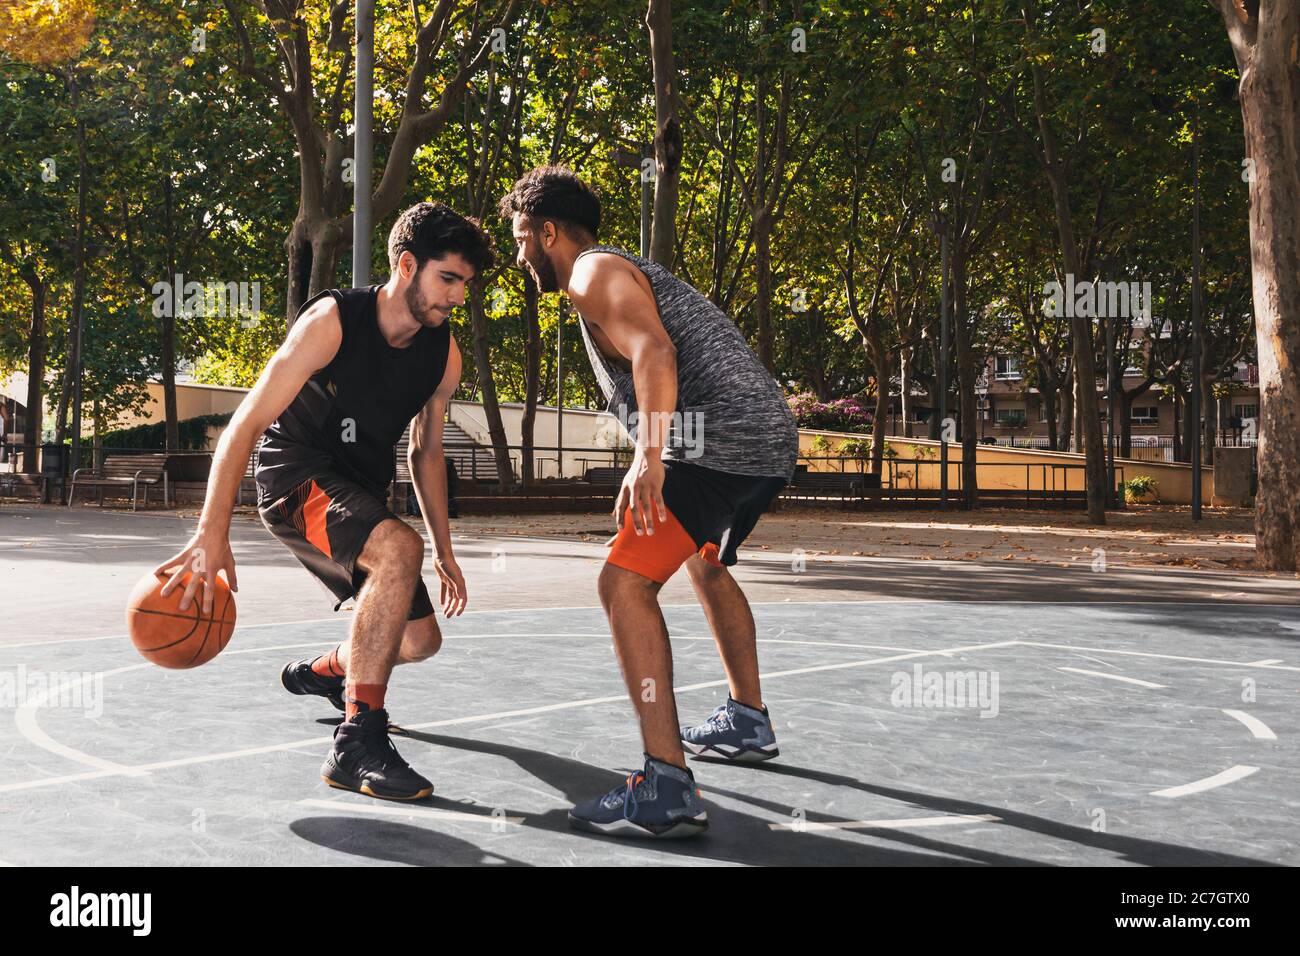 Zwei junge Männer spielen Basketball im Freien kämpfen um den Ball Stockfoto